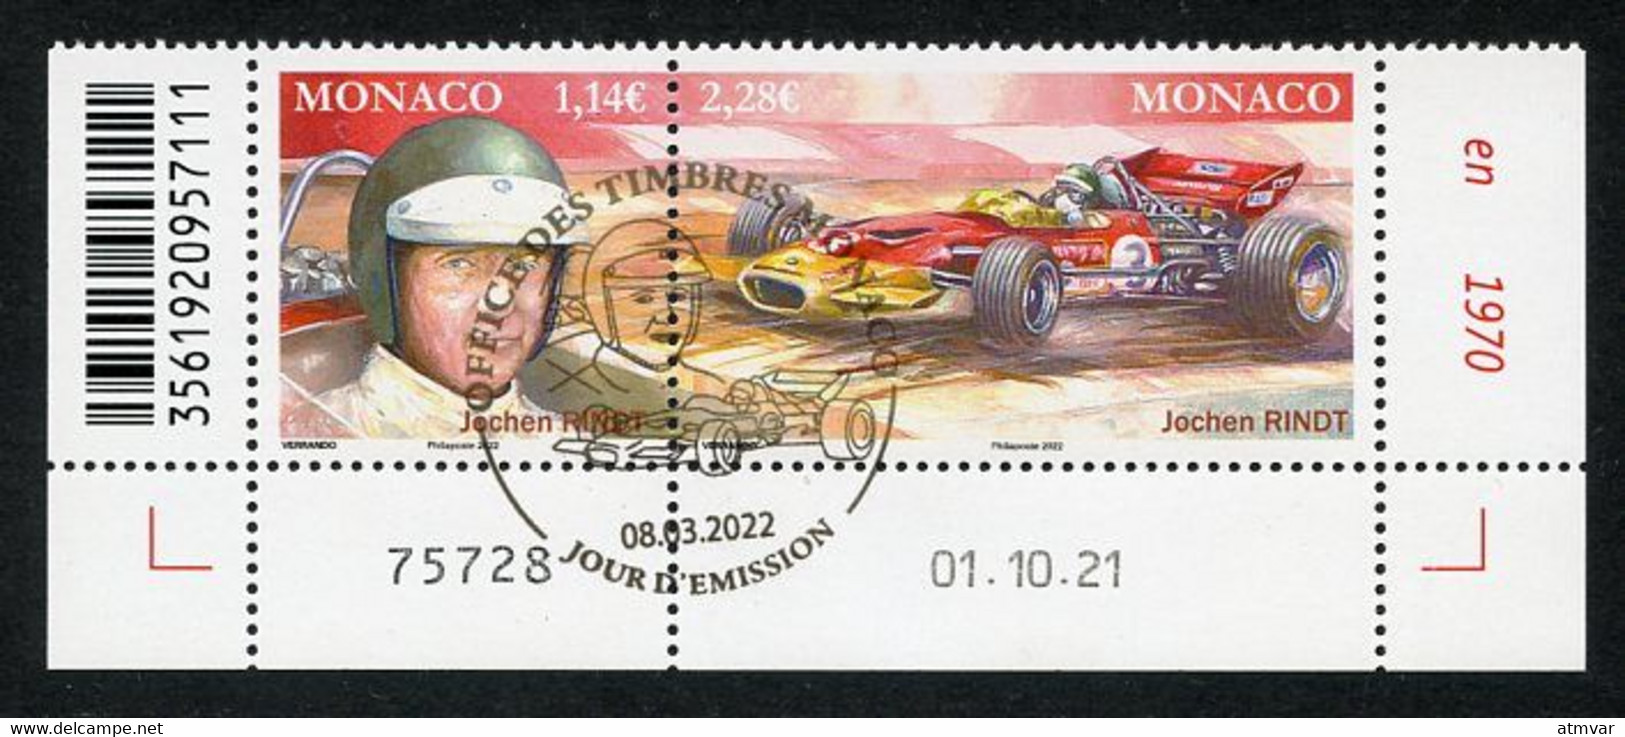 MONACO (2022) Pilotes Mythiques, Formula Formule 1, F1, Jochen Rindt (1942-1970), Grand Prix, Lotus 72 - Coin Daté - Usati